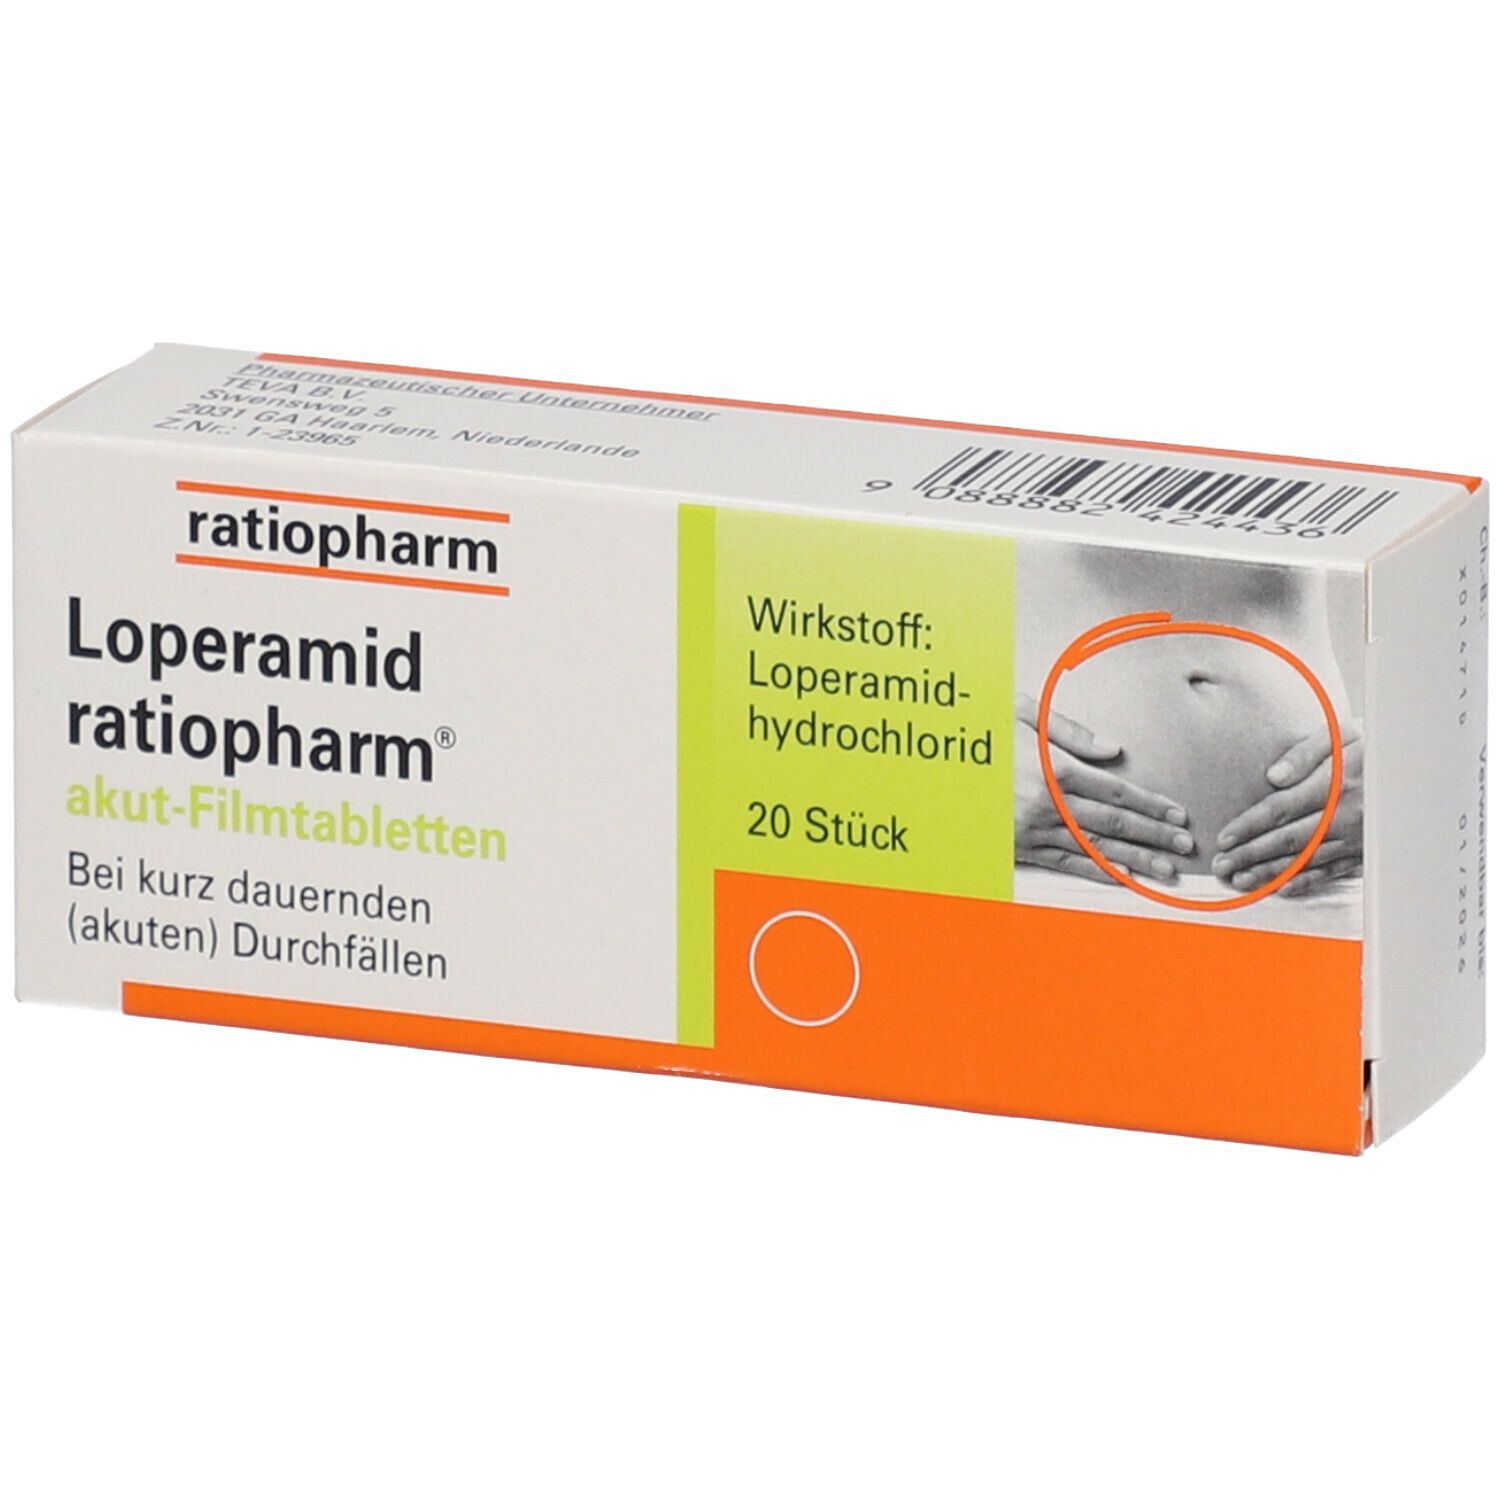 Loperamid ratiopharm® akut-Filmtabletten